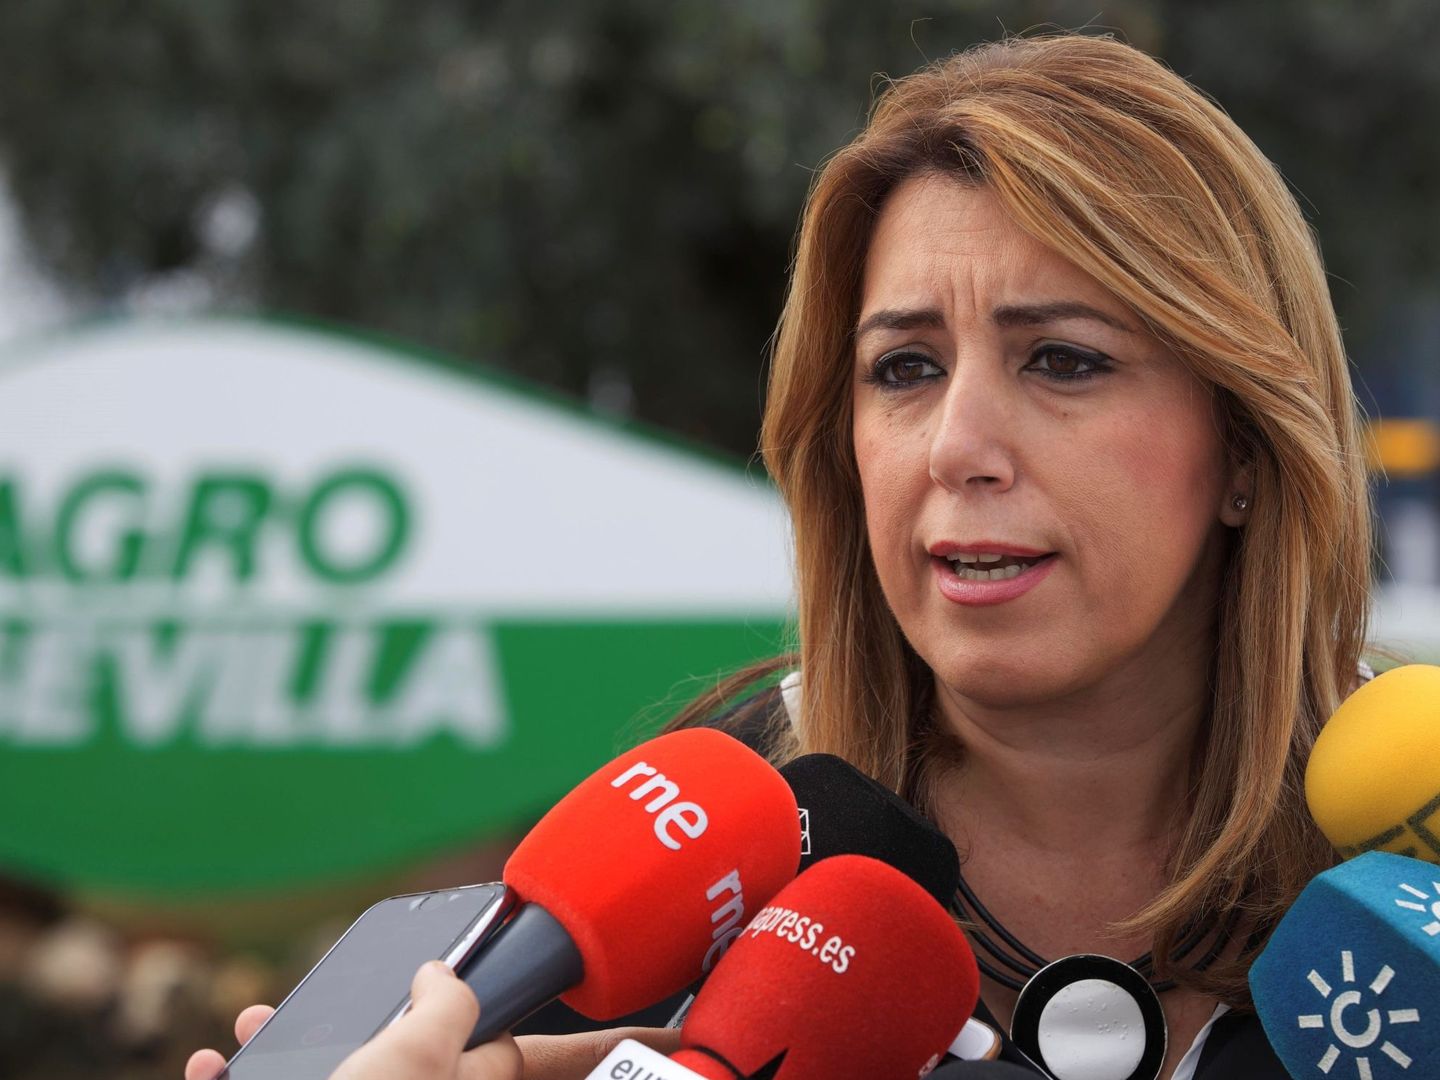 La presidenta andaluza, Susana Díaz. (EFE)